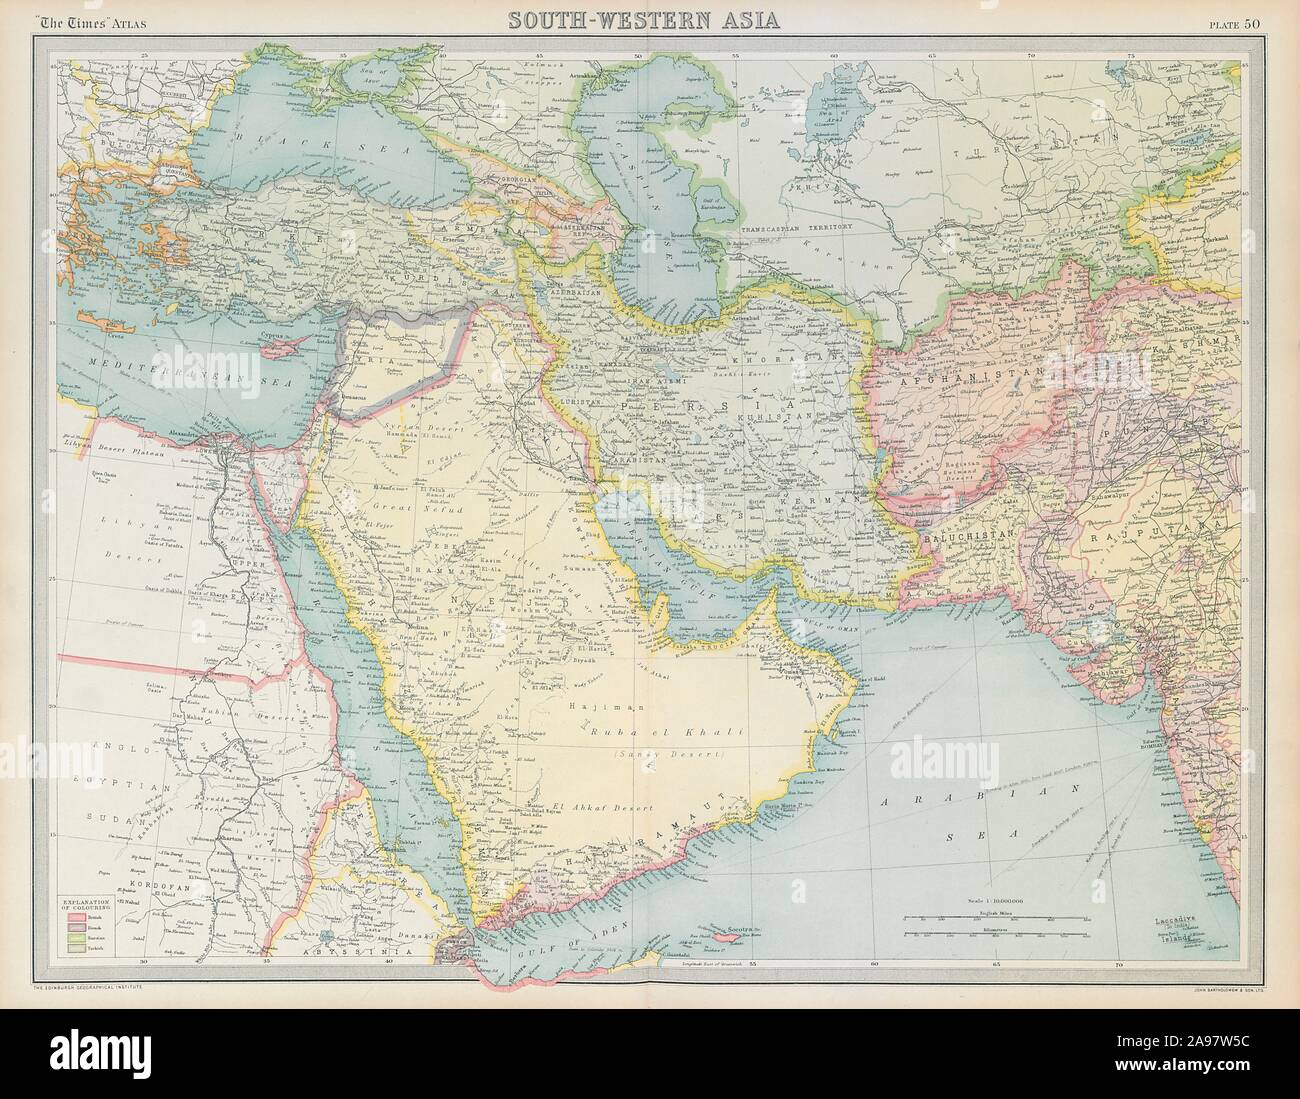 Arabien und dem Nahen Osten. Debai/Dubai Abu Dhabi Koweit/Kuwait. Die Zeiten 1922 Karte Stockfoto